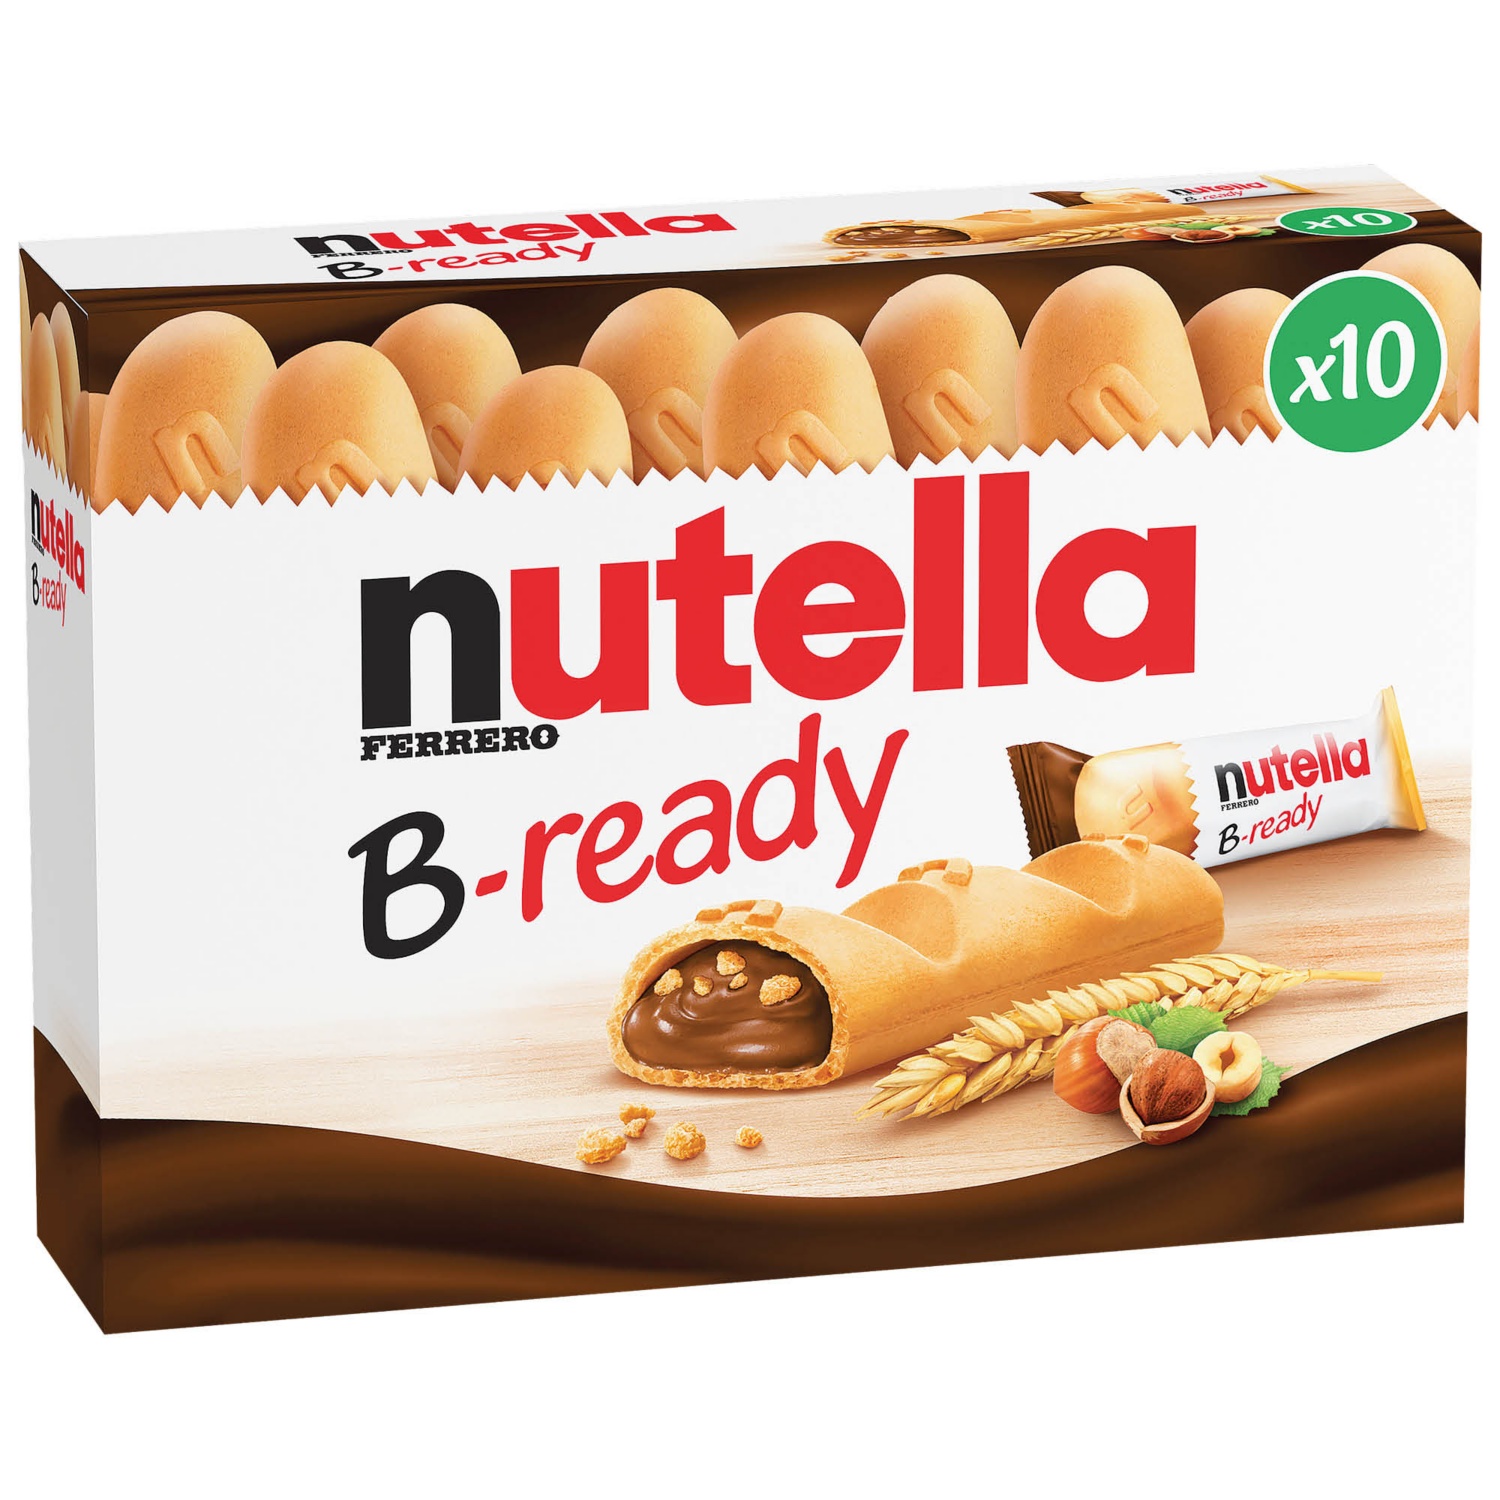 NUTELLA B-ready